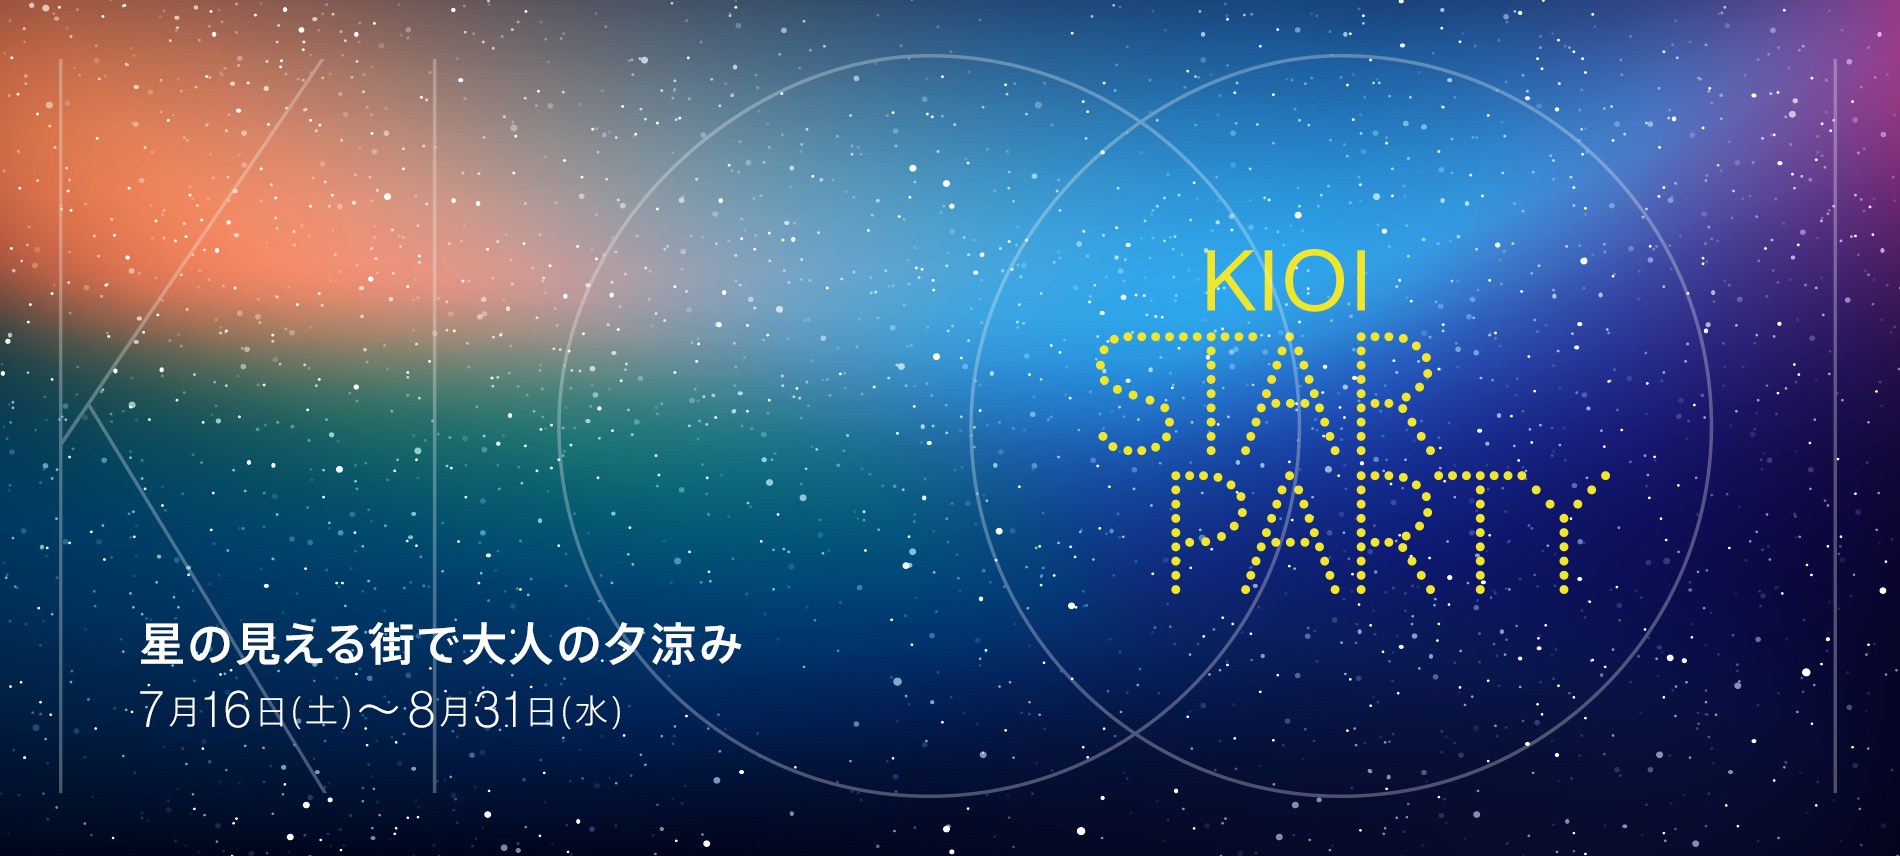 東京ガーデンテラス紀尾井町 KIOI SUMMER 2022 KIOI STAR PARTY 星の見える街で大人の夕涼み